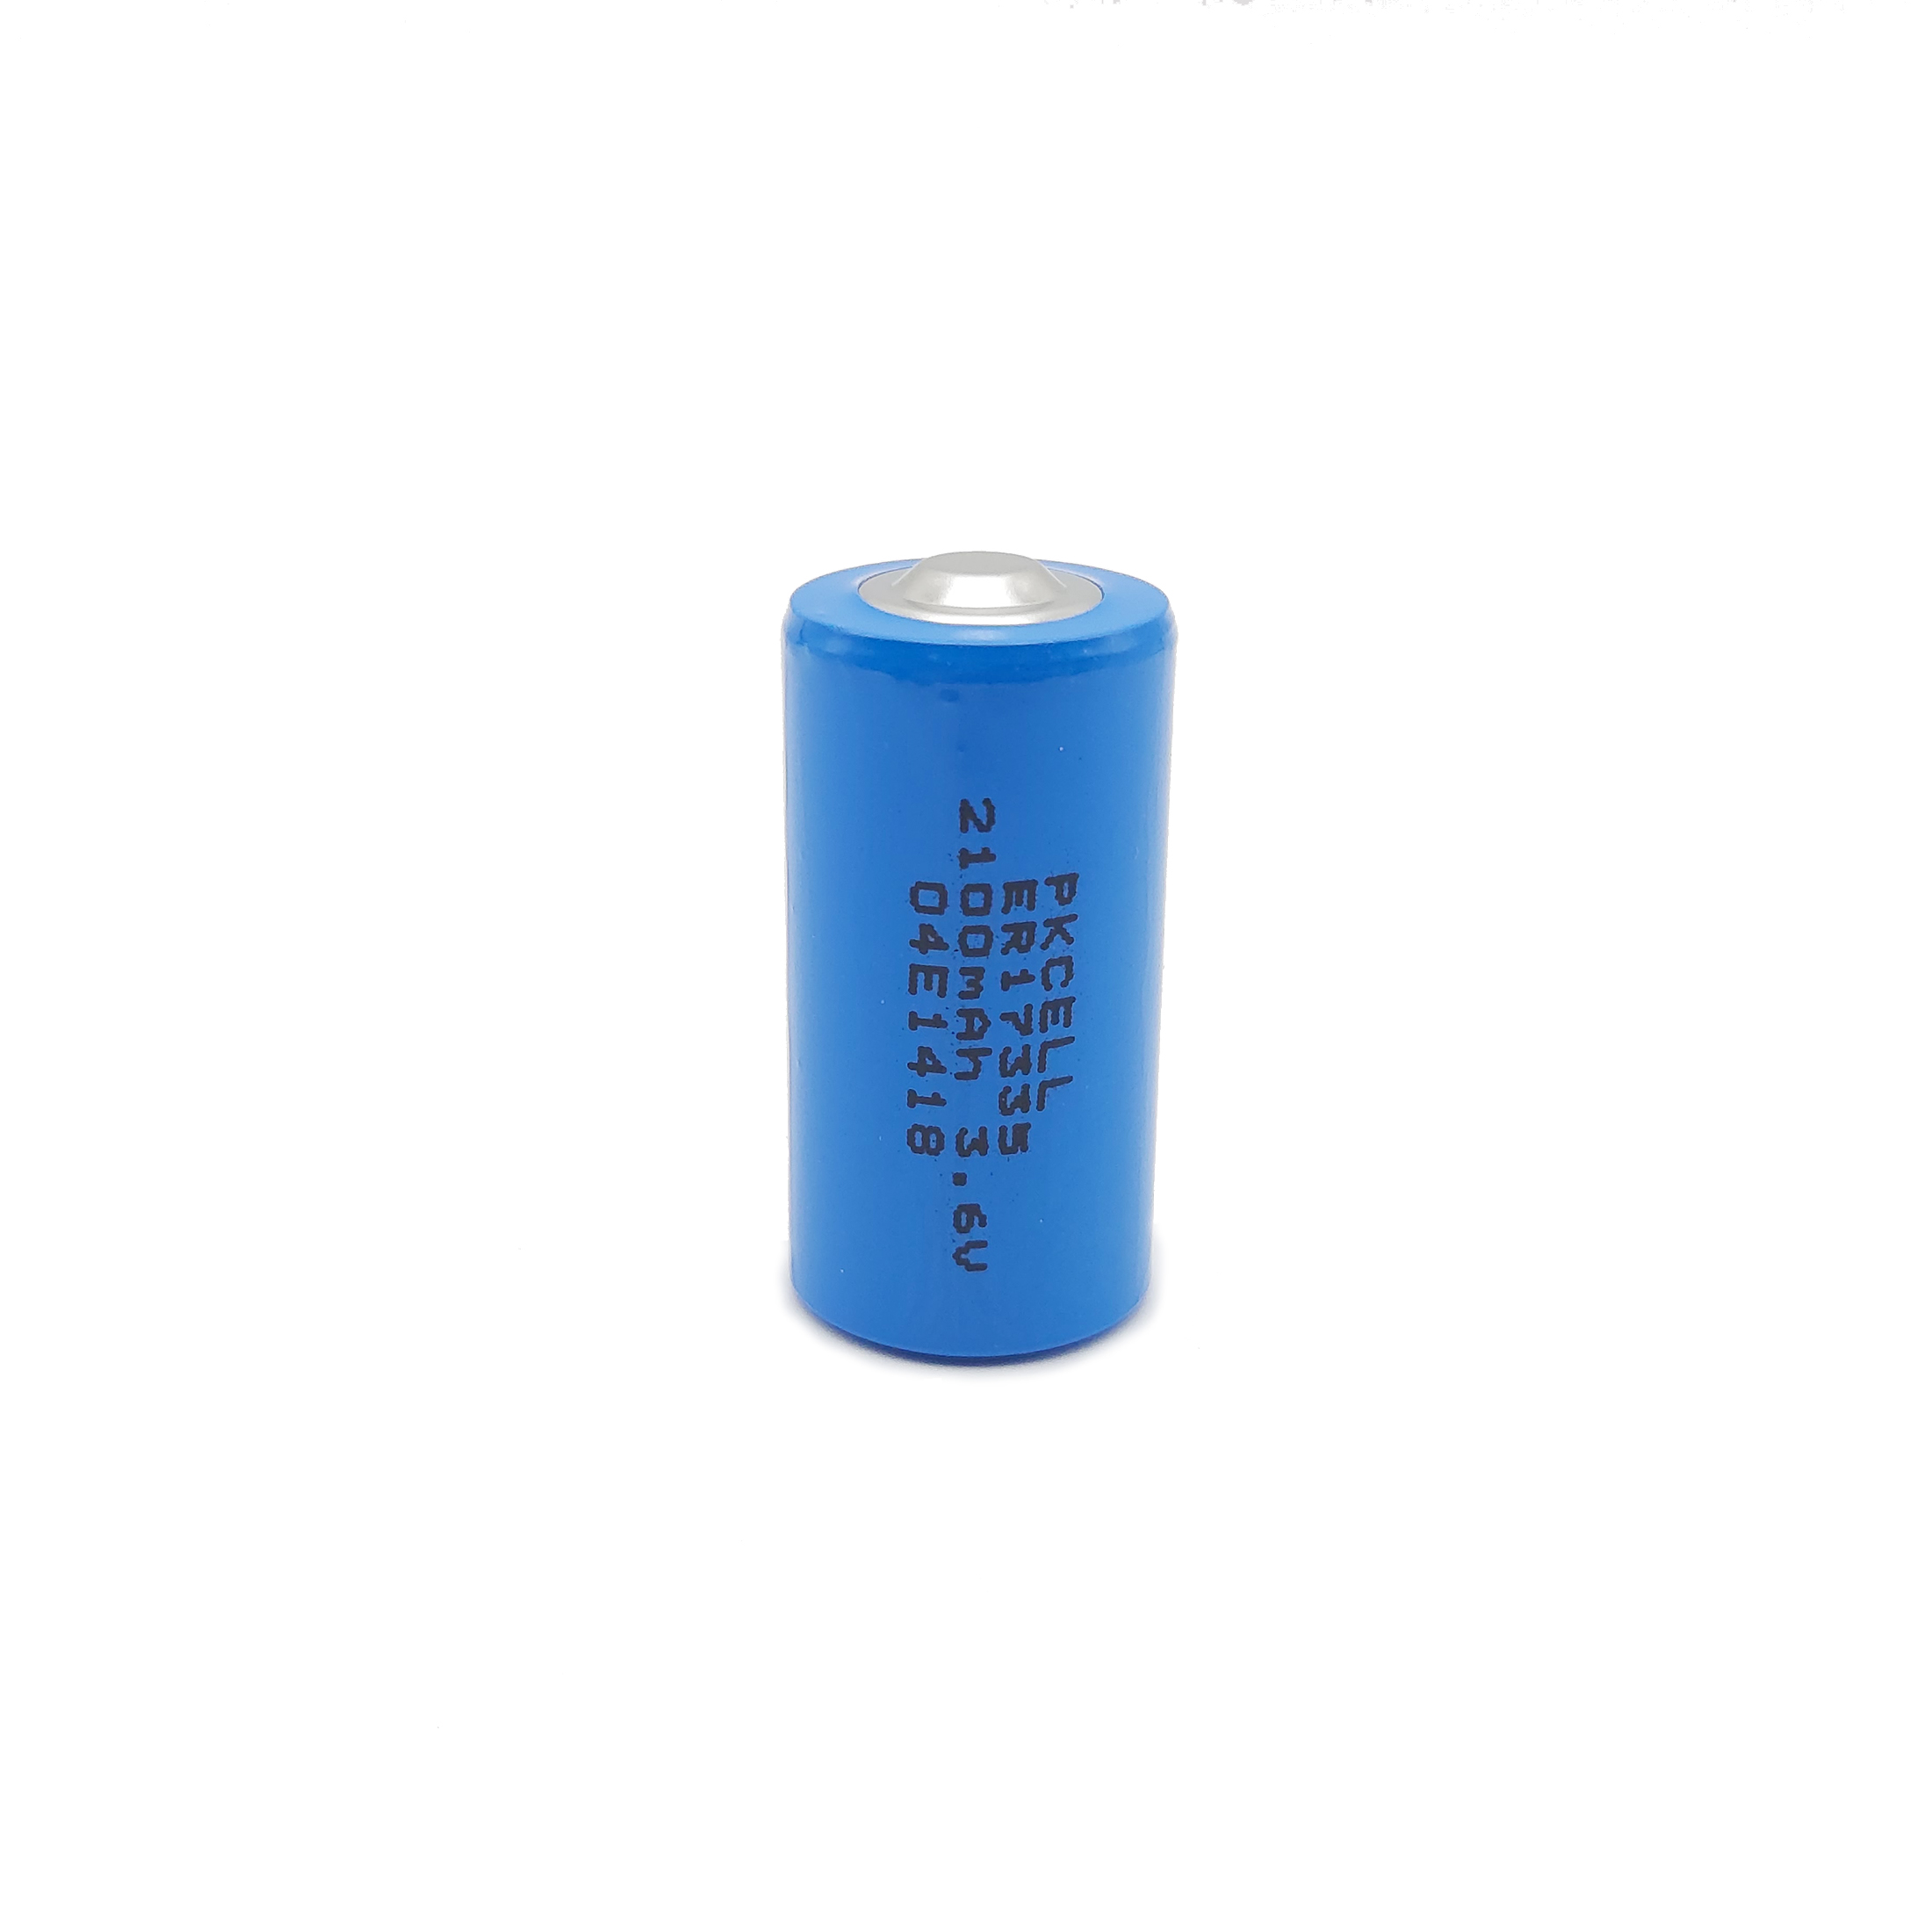 Batterie für Elock Schloss, geeignet für ELOCK und ELOCK2 Schlösser